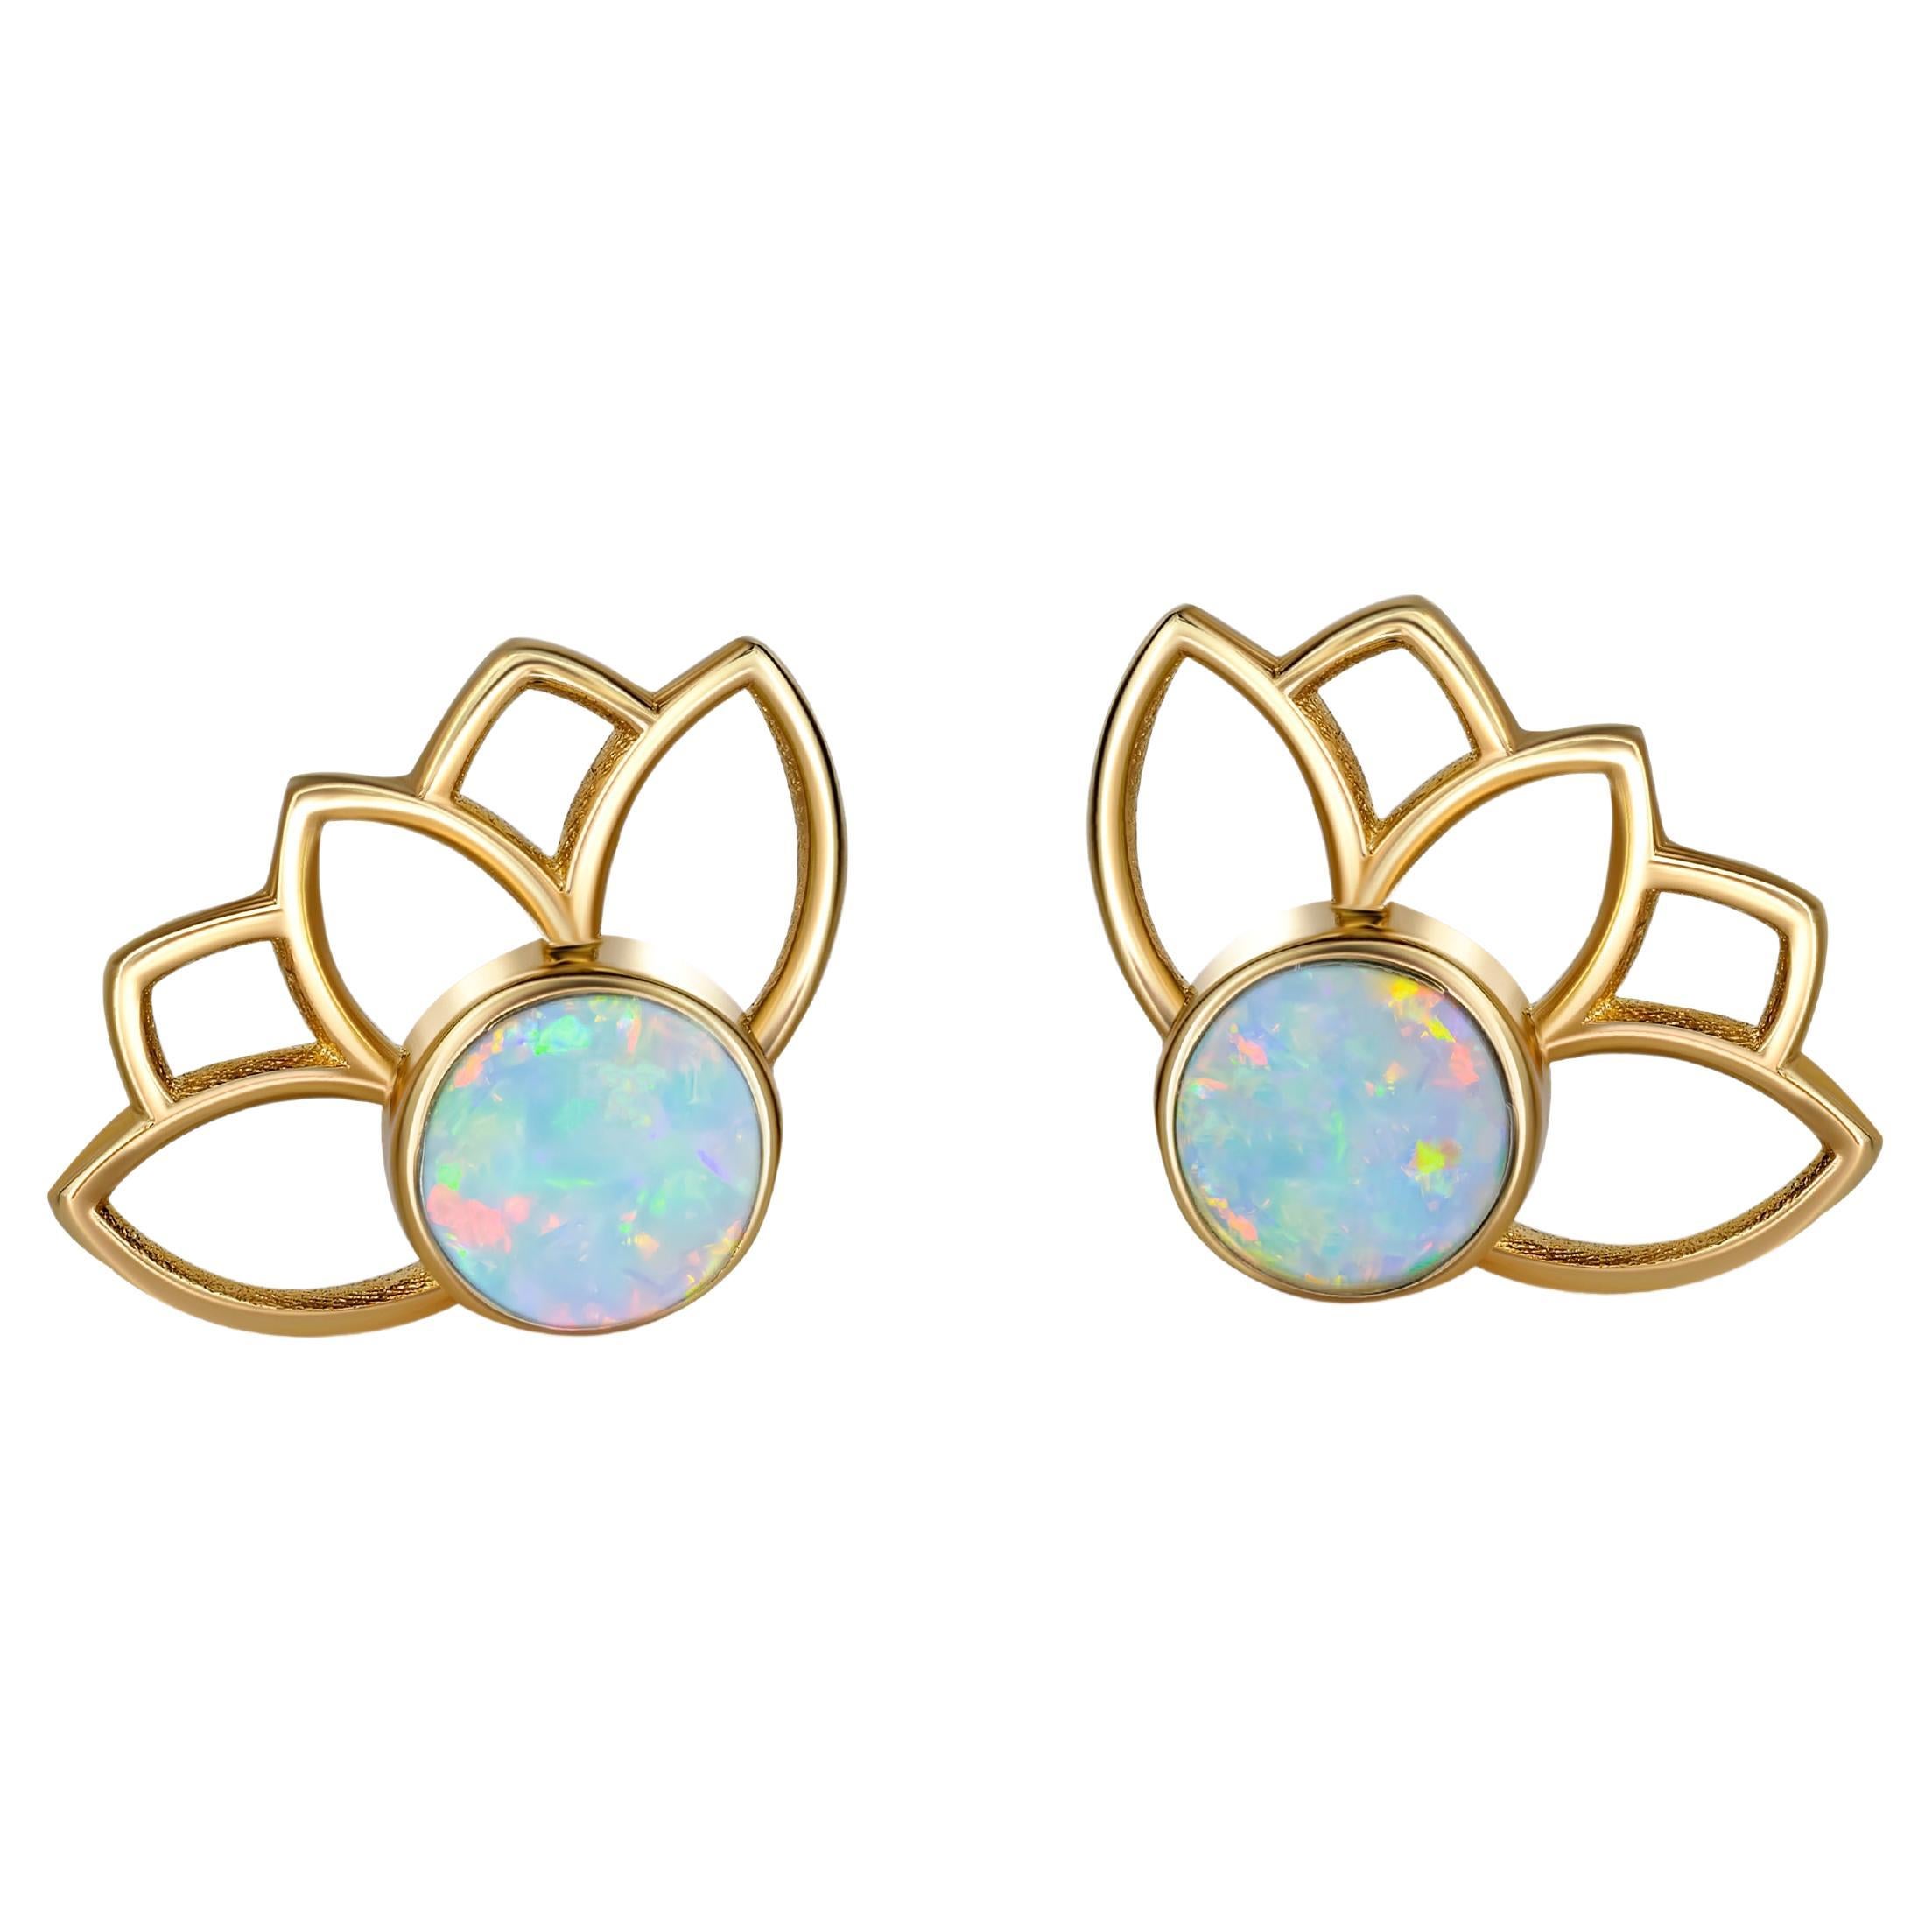 Lotus Earrings Studs with Opals in 14k Gold, Opal Gold Earrings